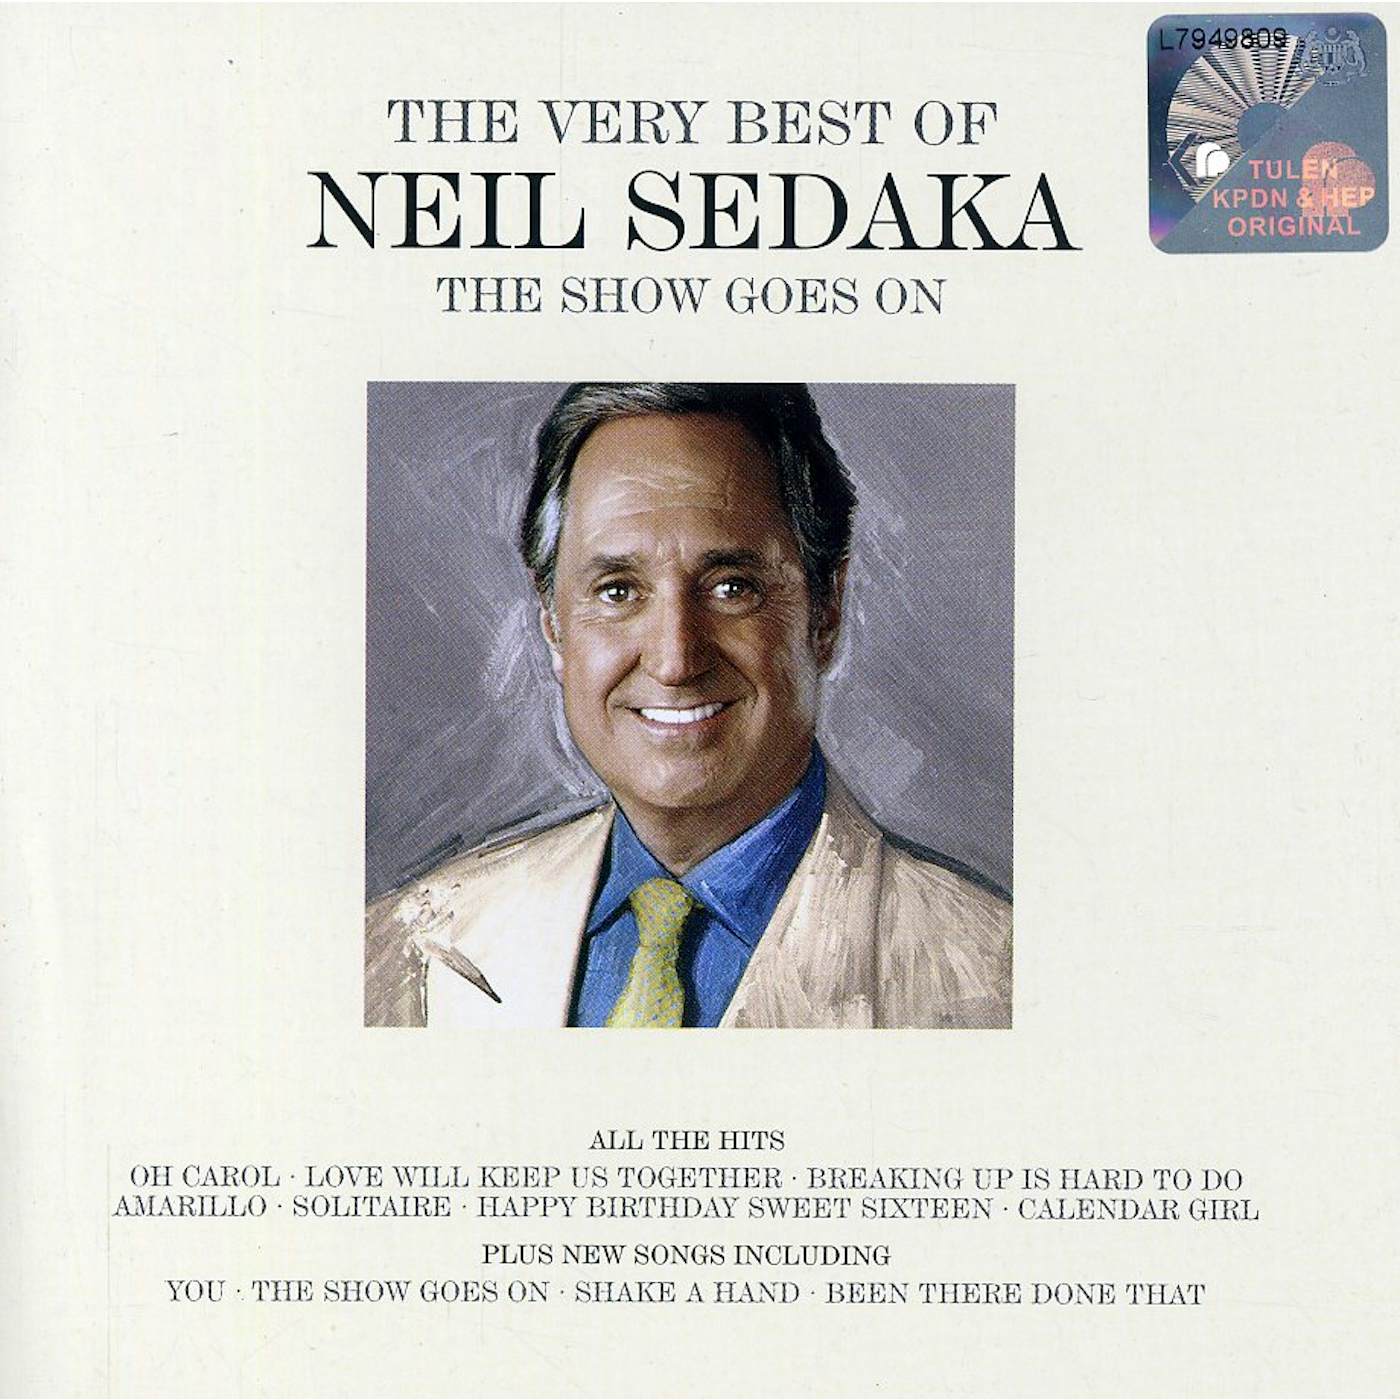 SHOW GOES ON: THE VERY BEST OF NEIL SEDAKA CD - UK Release